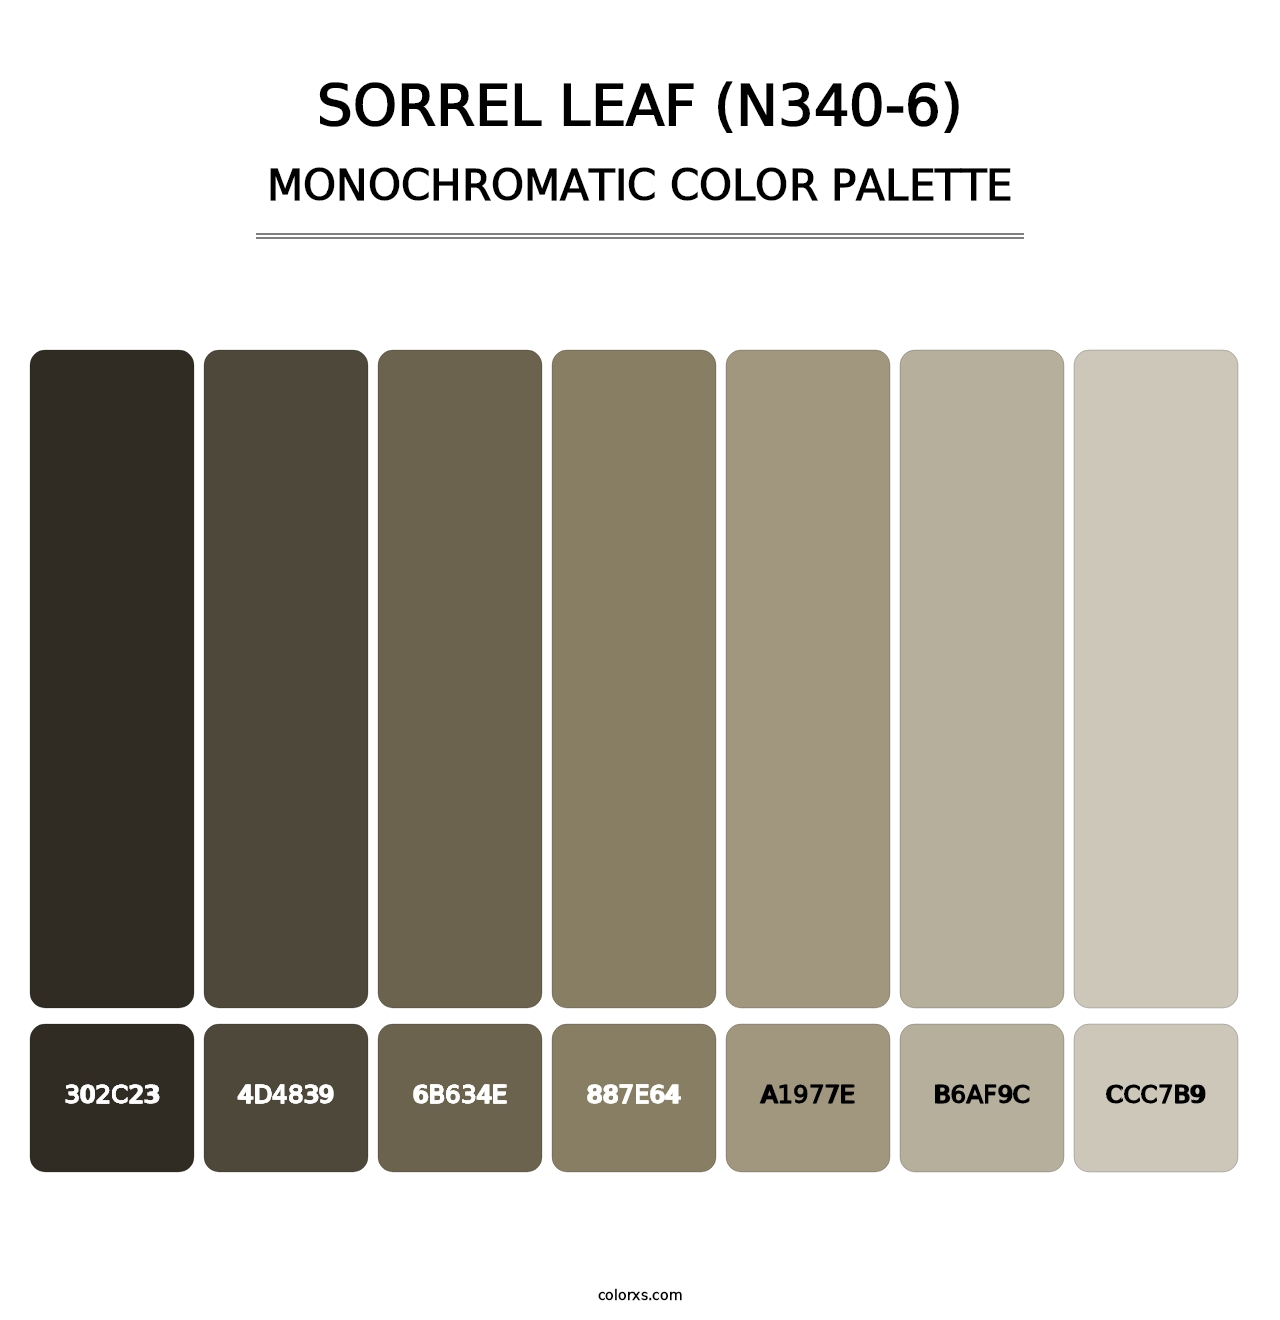 Sorrel Leaf (N340-6) - Monochromatic Color Palette